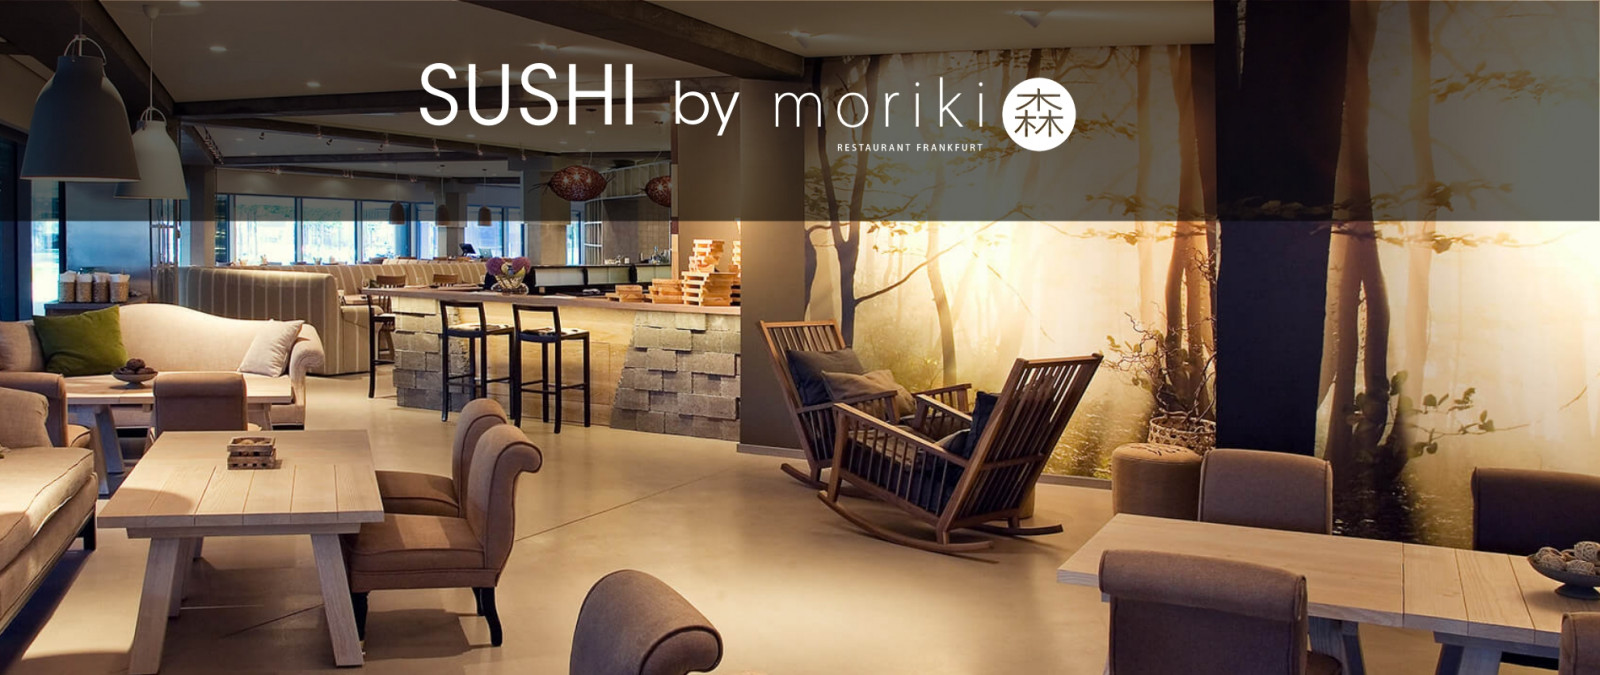 fps catering startseiten slider sushi moriki to go